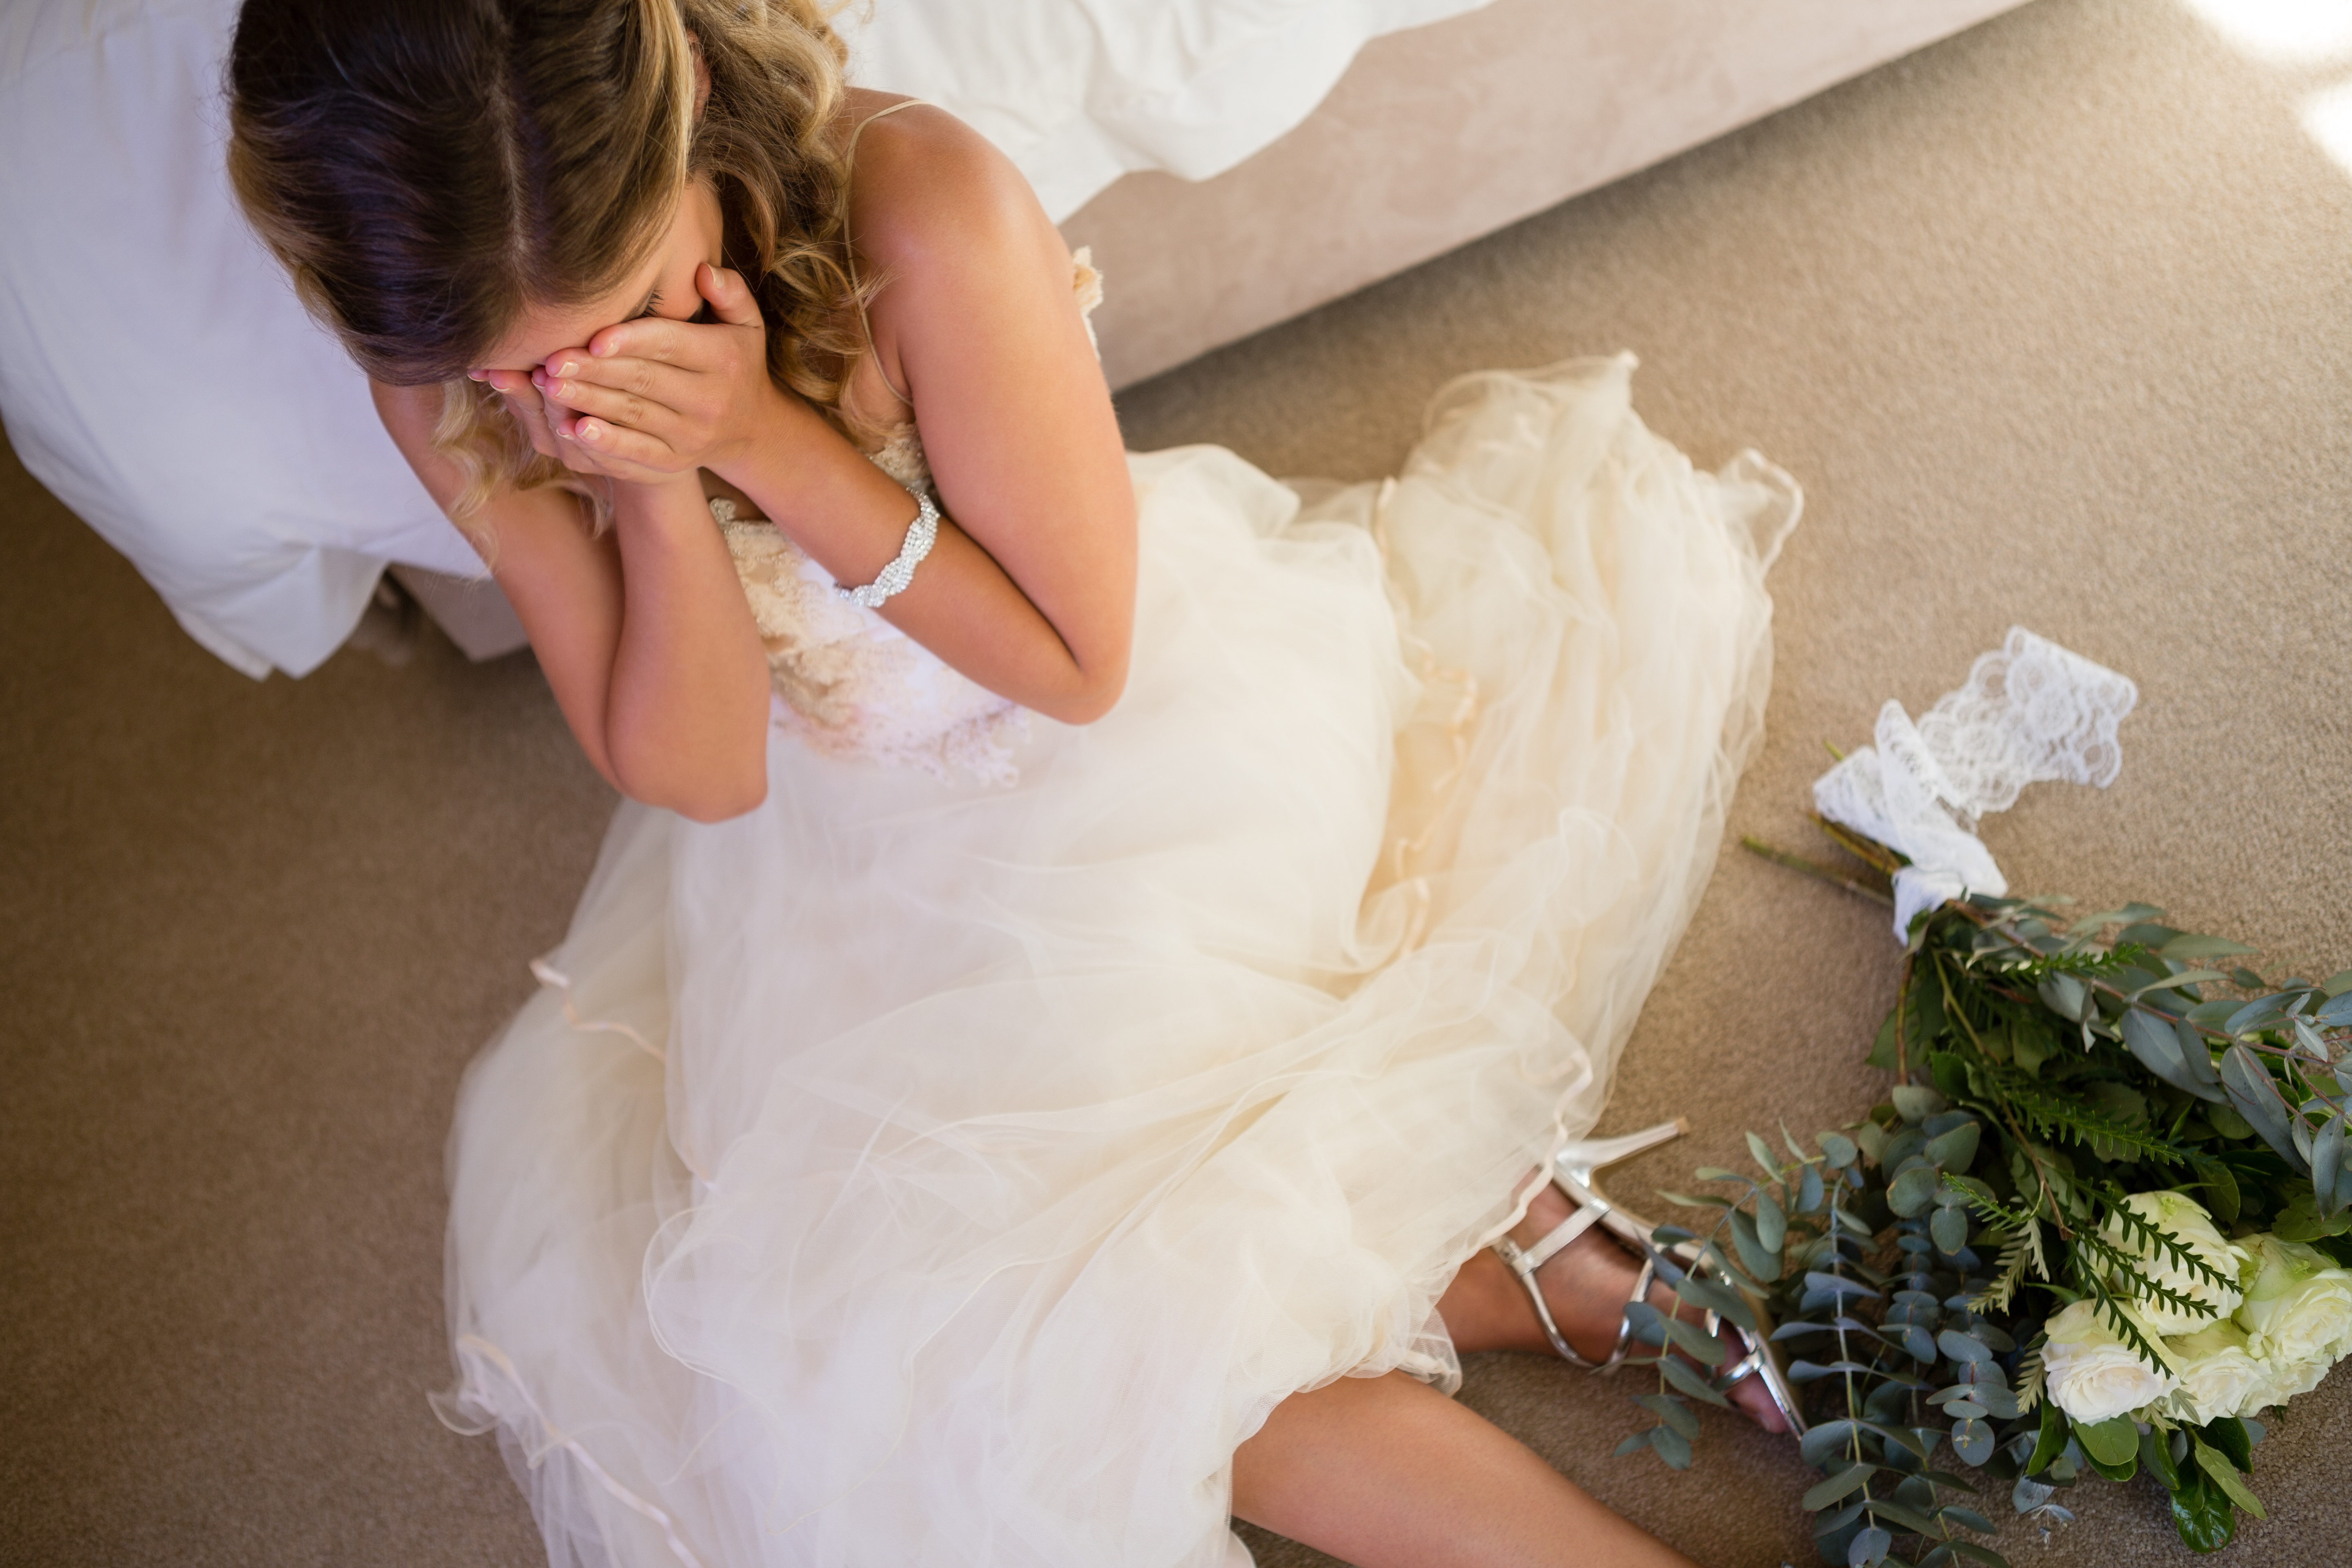 Eine Frau weint auf dem Boden in einem Hochzeitskleid | Quelle: Shutterstock